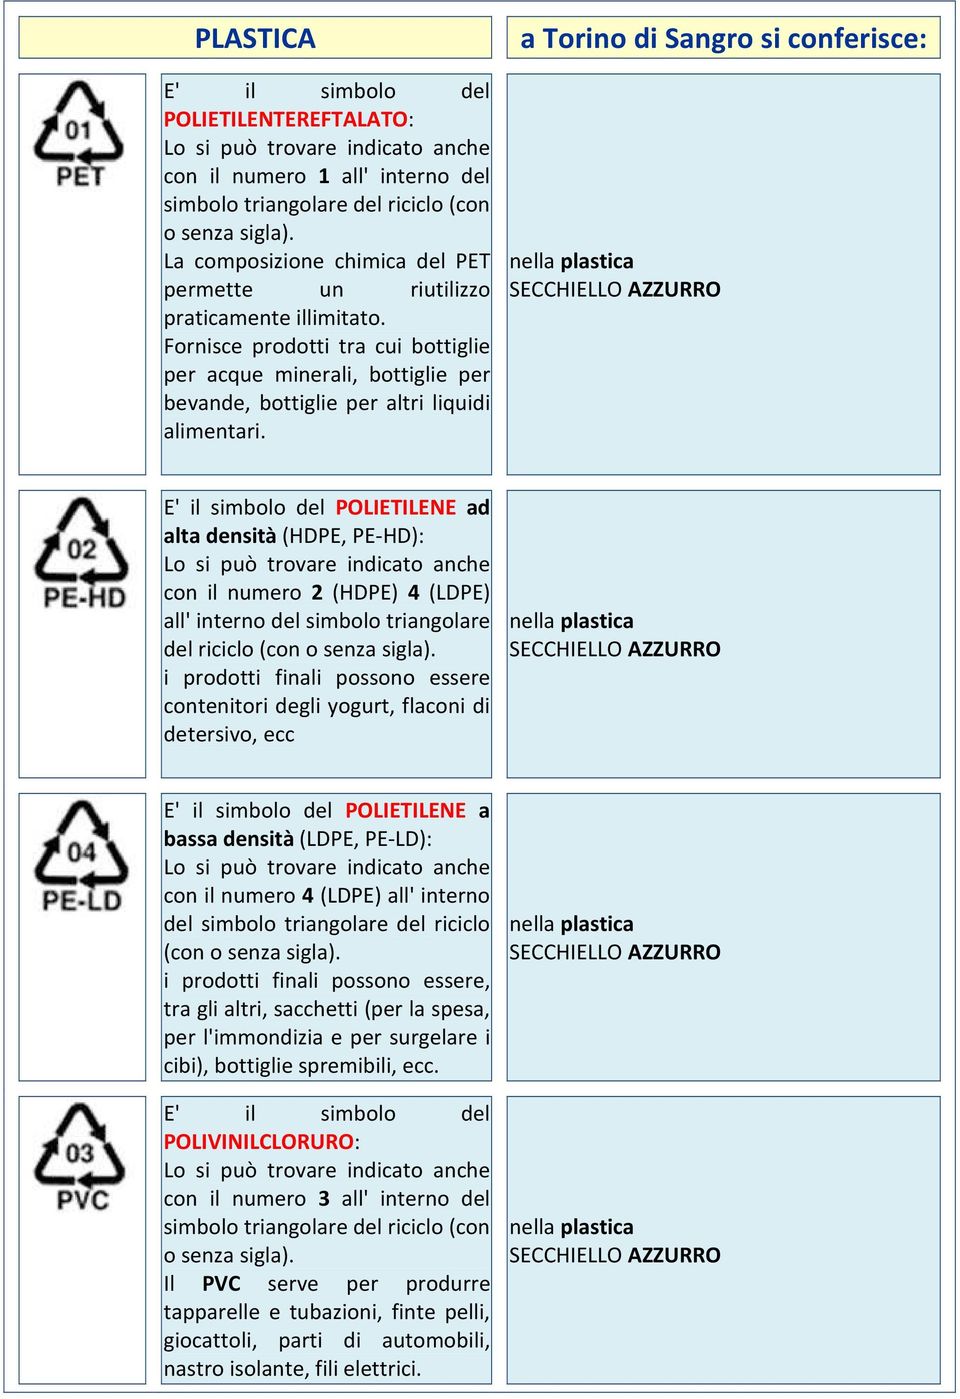 a Torino di Sangro si conferisce: nella plastica E' il simbolo del POLIETILENE ad alta densità (HDPE, PE-HD): Lo si può trovare indicato anche con il numero 2 (HDPE) 4 (LDPE) all' interno del simbolo